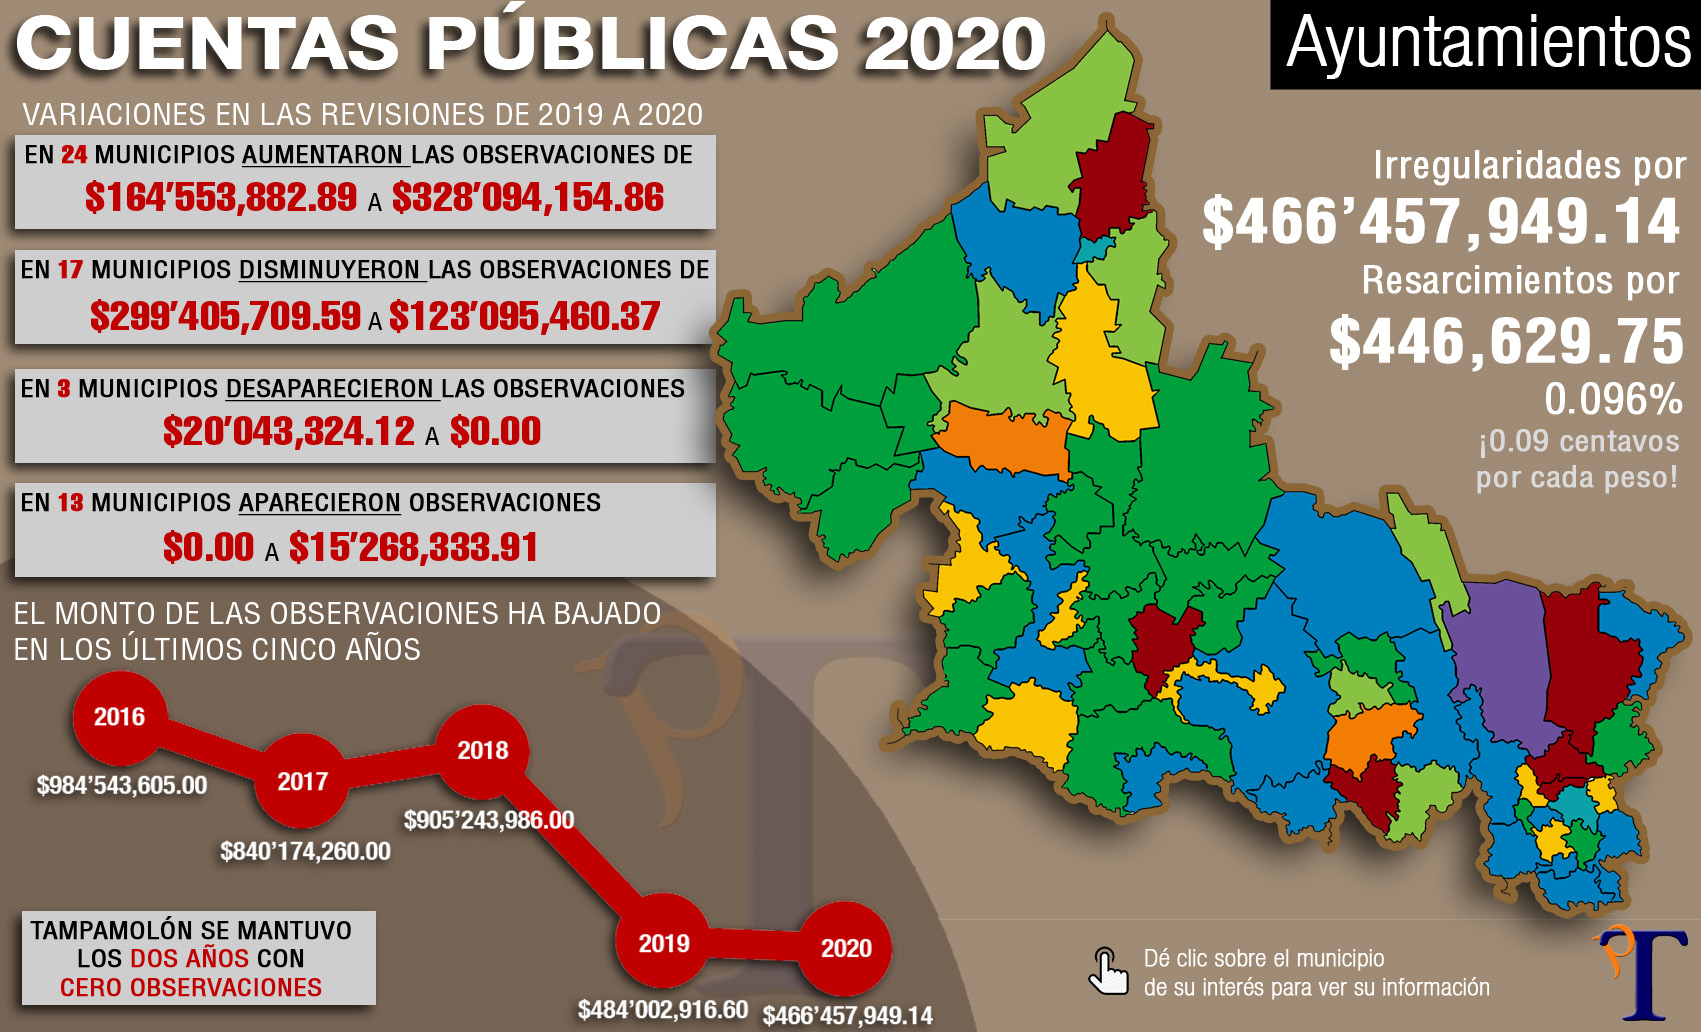 Cuentas municipales 2020: unos ayuntamientos más limpios que otros